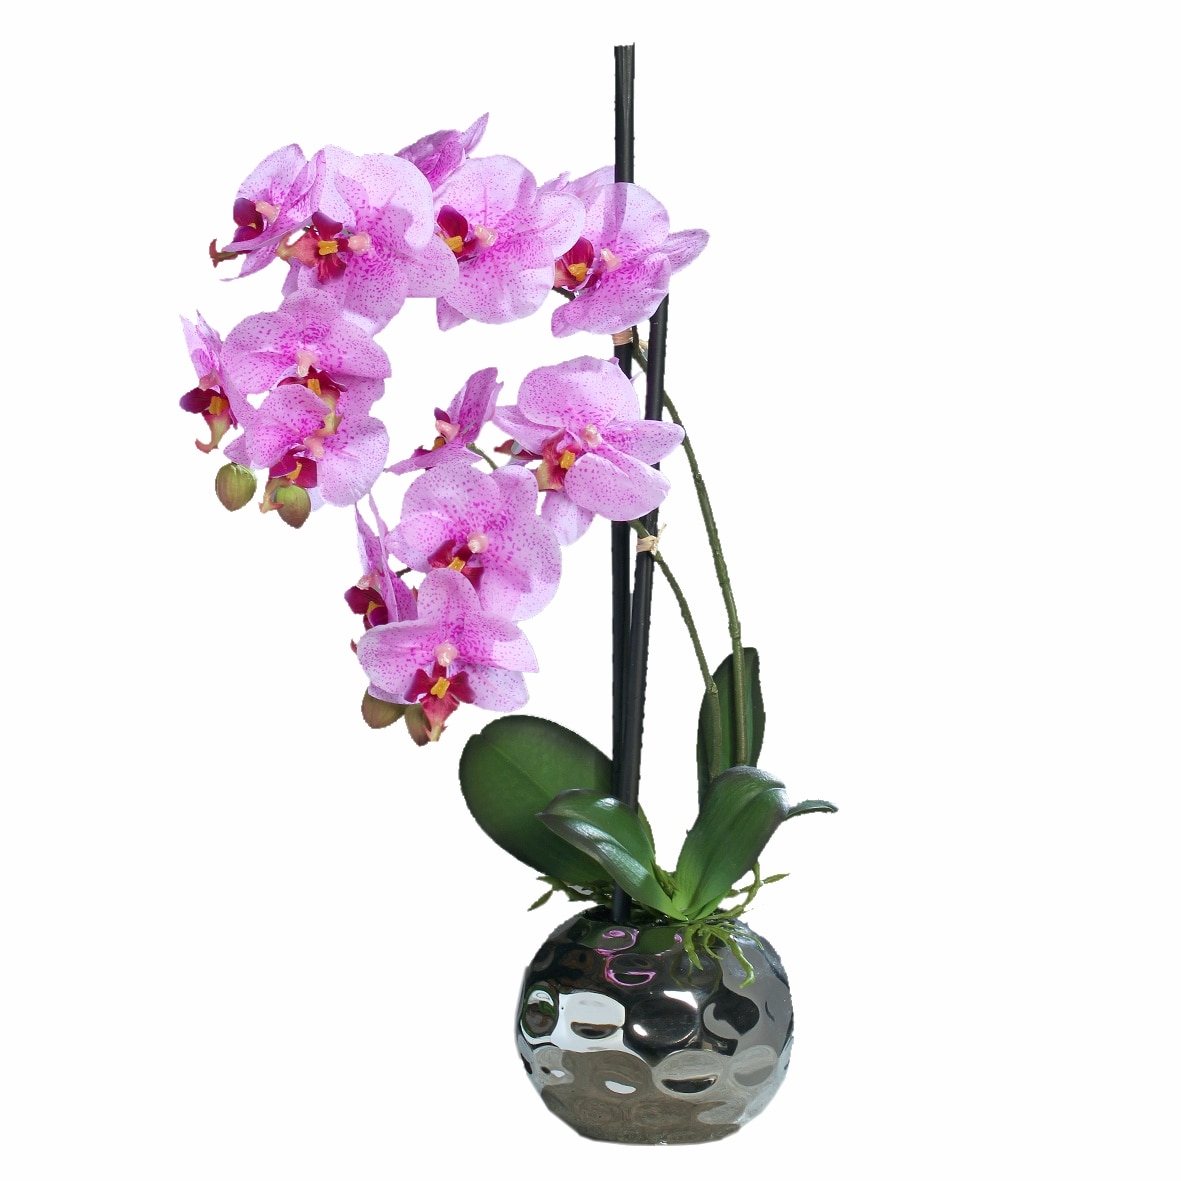 Орхидея в горшке. Орхидея розовая в горшке. Орхидея искусственная в керамическом горшке. Орхидея в горшке с розовыми цветами. Орхидея в горшке купить в интернет